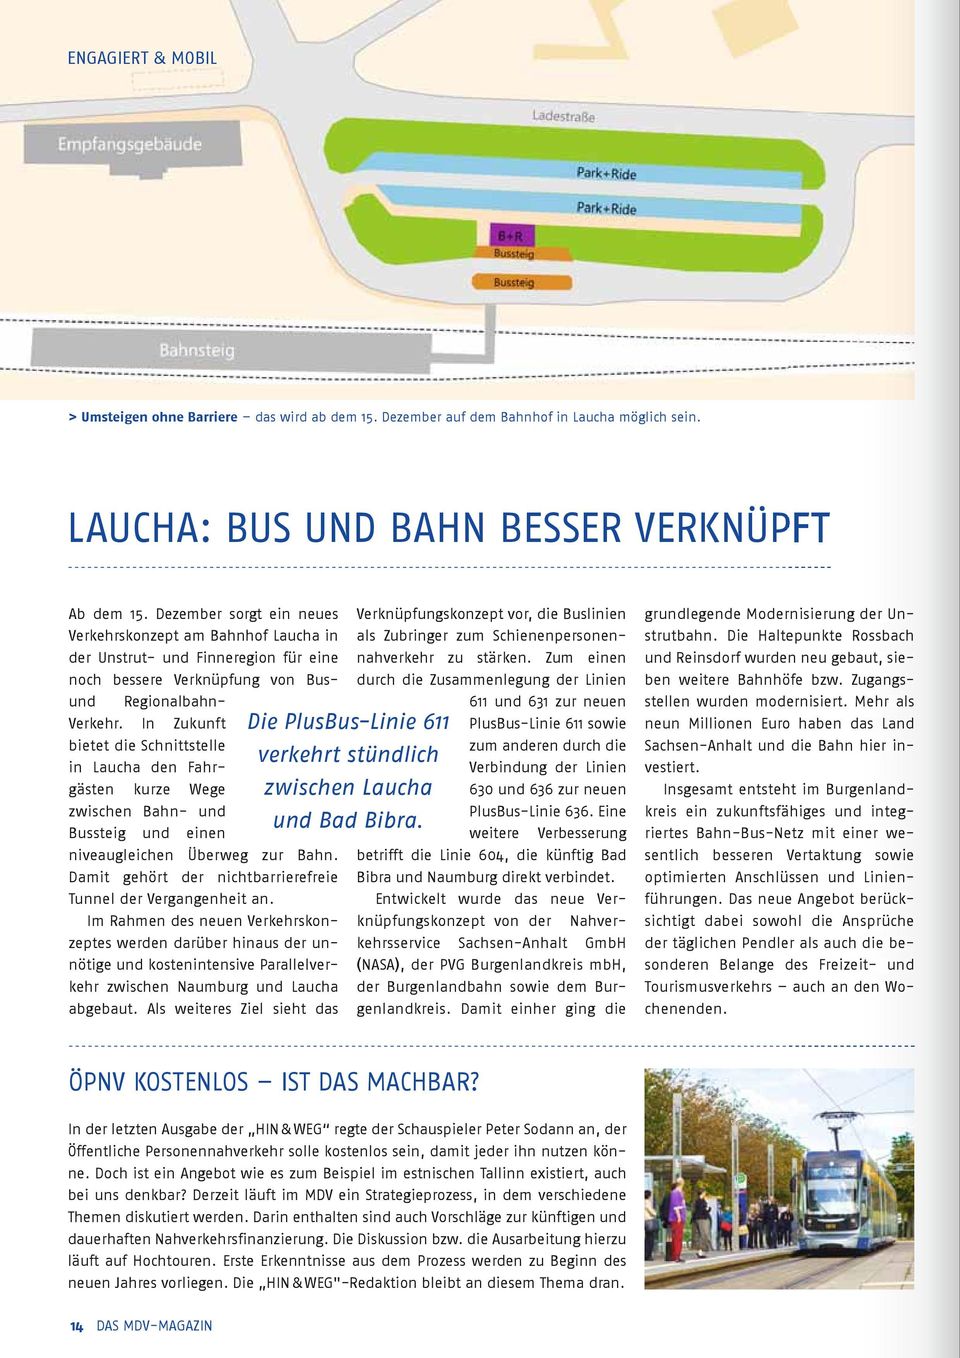 In Zukunft bietet die Schnittstelle in Laucha den Fahrgästen kurze Wege zwischen Bahn- und Bussteig und einen niveaugleichen Überweg zur Bahn.